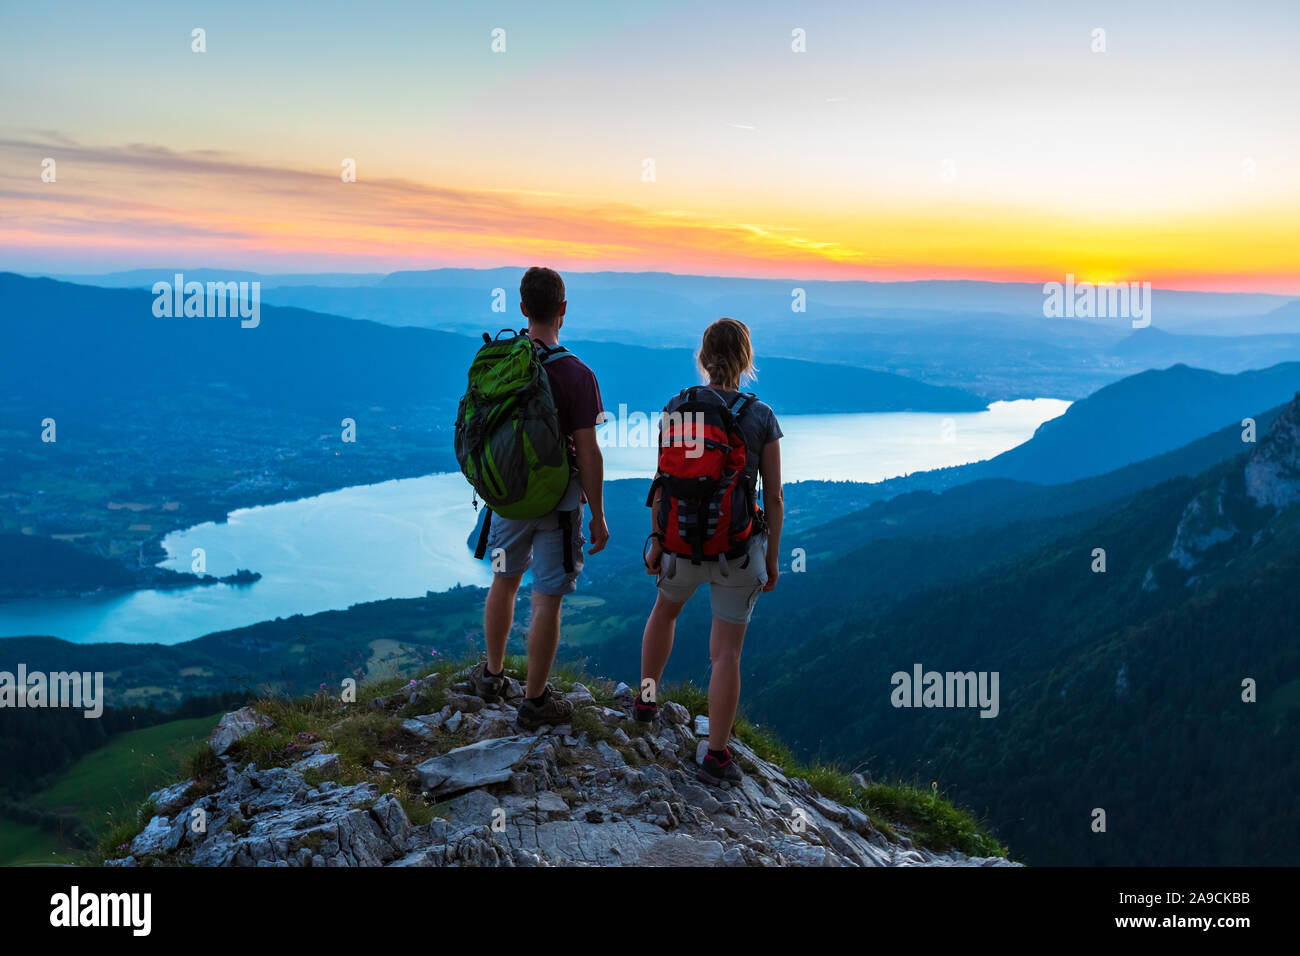 Excursionistas disfrutando de vistas panorámicas del valle con el lago al atardecer, pareja disfrutando de verano al aire libre trekking en las montañas, un estilo de vida activo, dos personas como mochilero Foto de stock